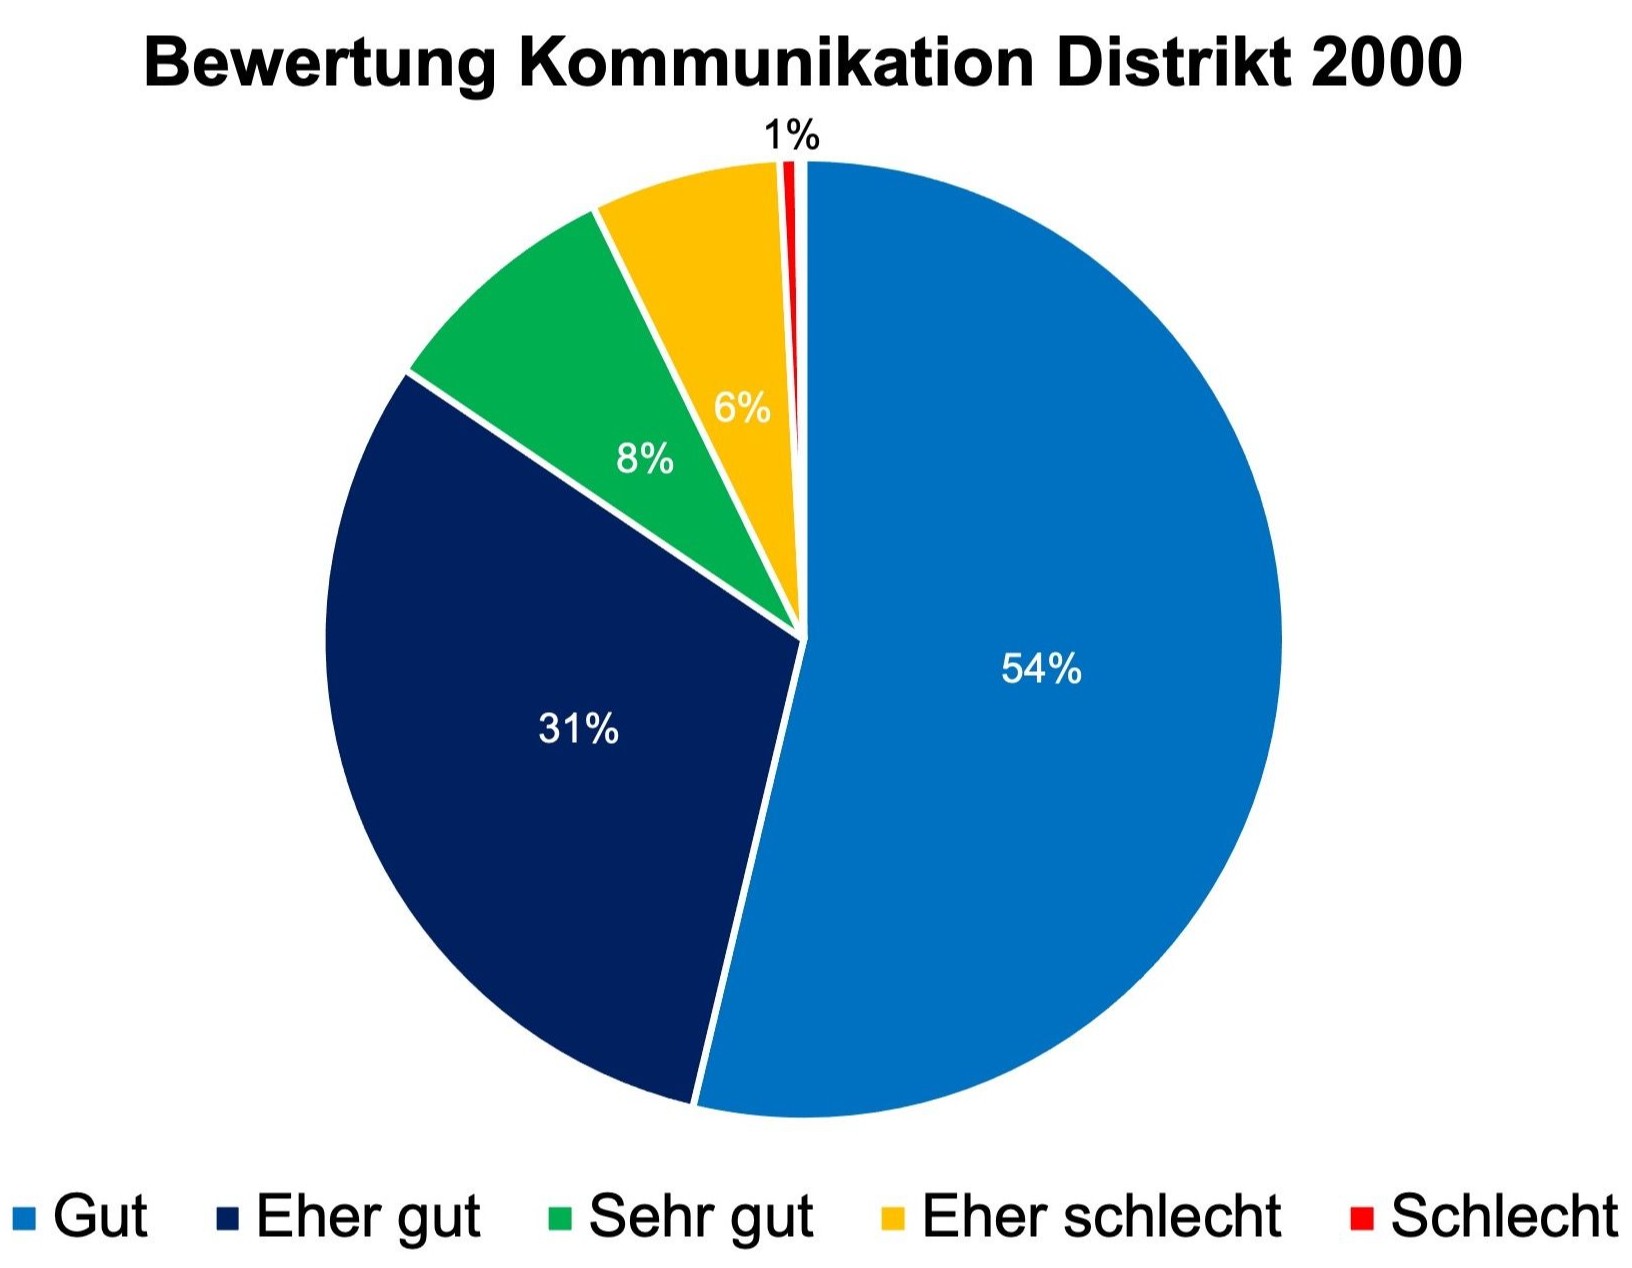 Bewertung Kommunikation Rotary Distrikt 2000 (Die Bewertung «Sehr schlecht» [weniger als 1%] ist nicht visualisiert.)